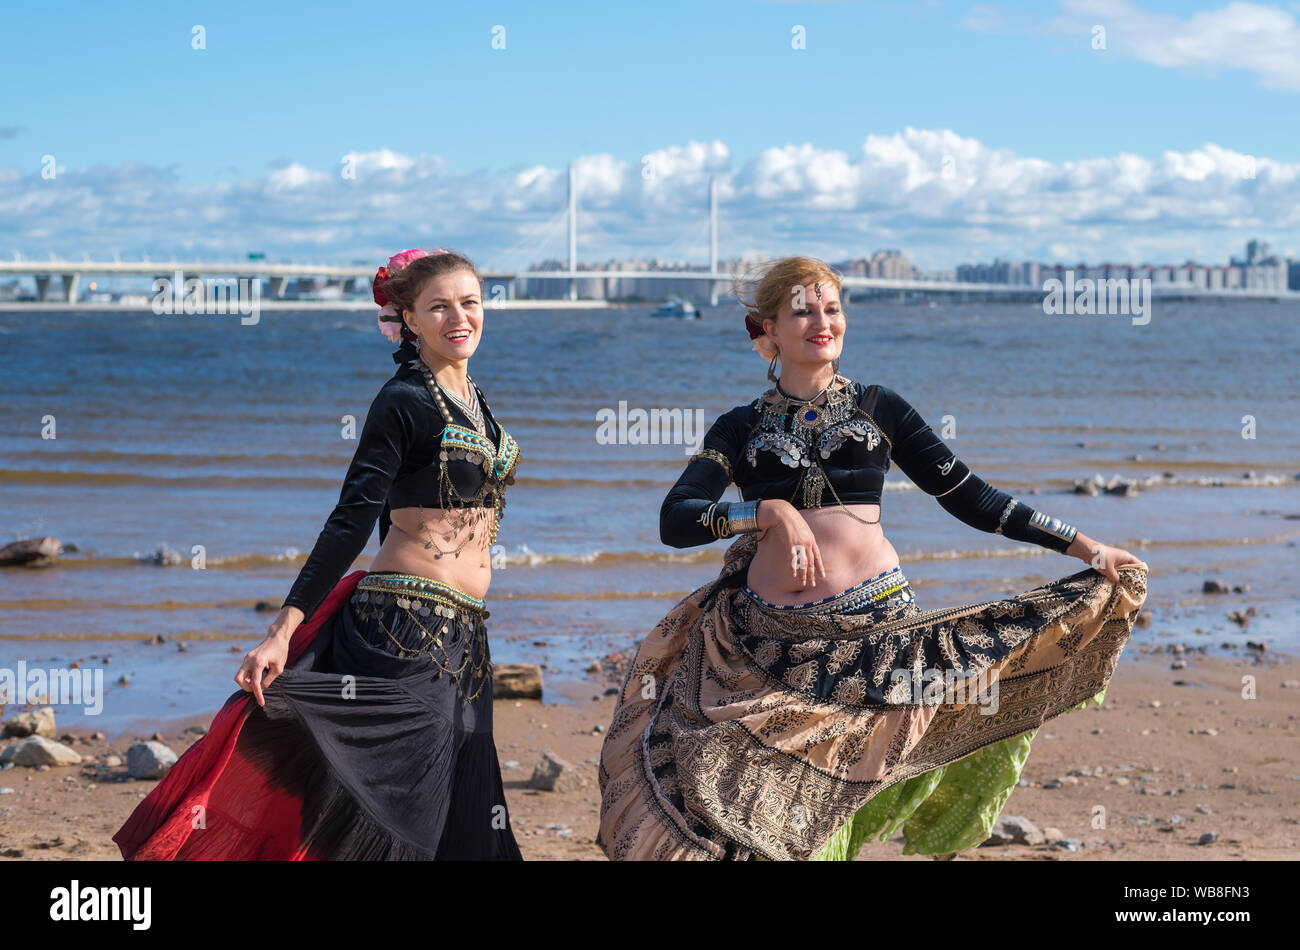 St. Petersburg, Russland. 24. August 2019: Tänzerinnen in orientalischen Kostümen am Ufer. Stockfoto